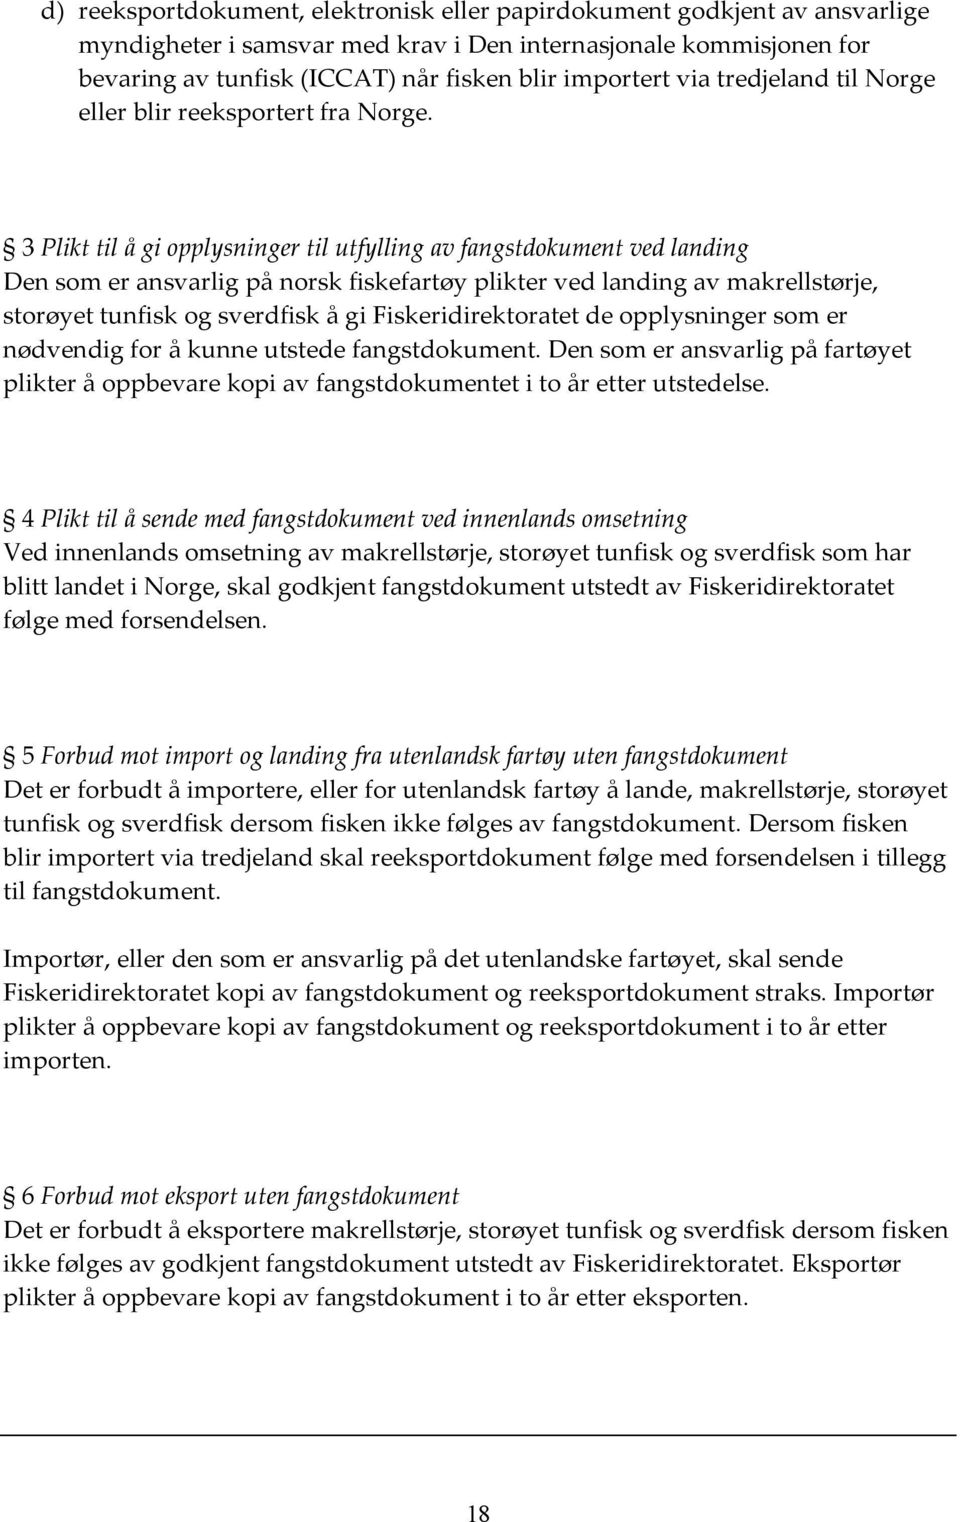 3 Plikt til å gi opplysninger til utfylling av fangstdokument ved landing Den som er ansvarlig på norsk fiskefartøy plikter ved landing av makrellstørje, storøyet tunfisk og sverdfisk å gi